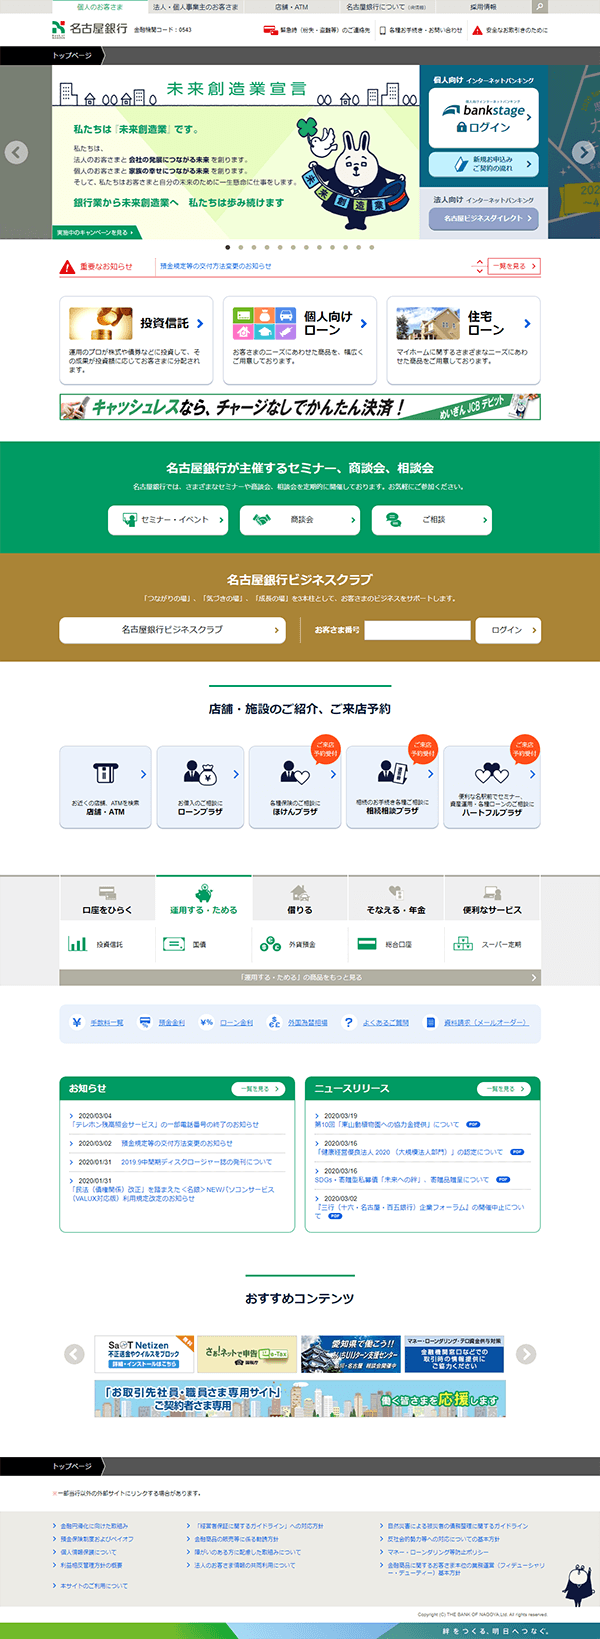 名古屋銀行のホームページ　パソコン版のキャプチャ